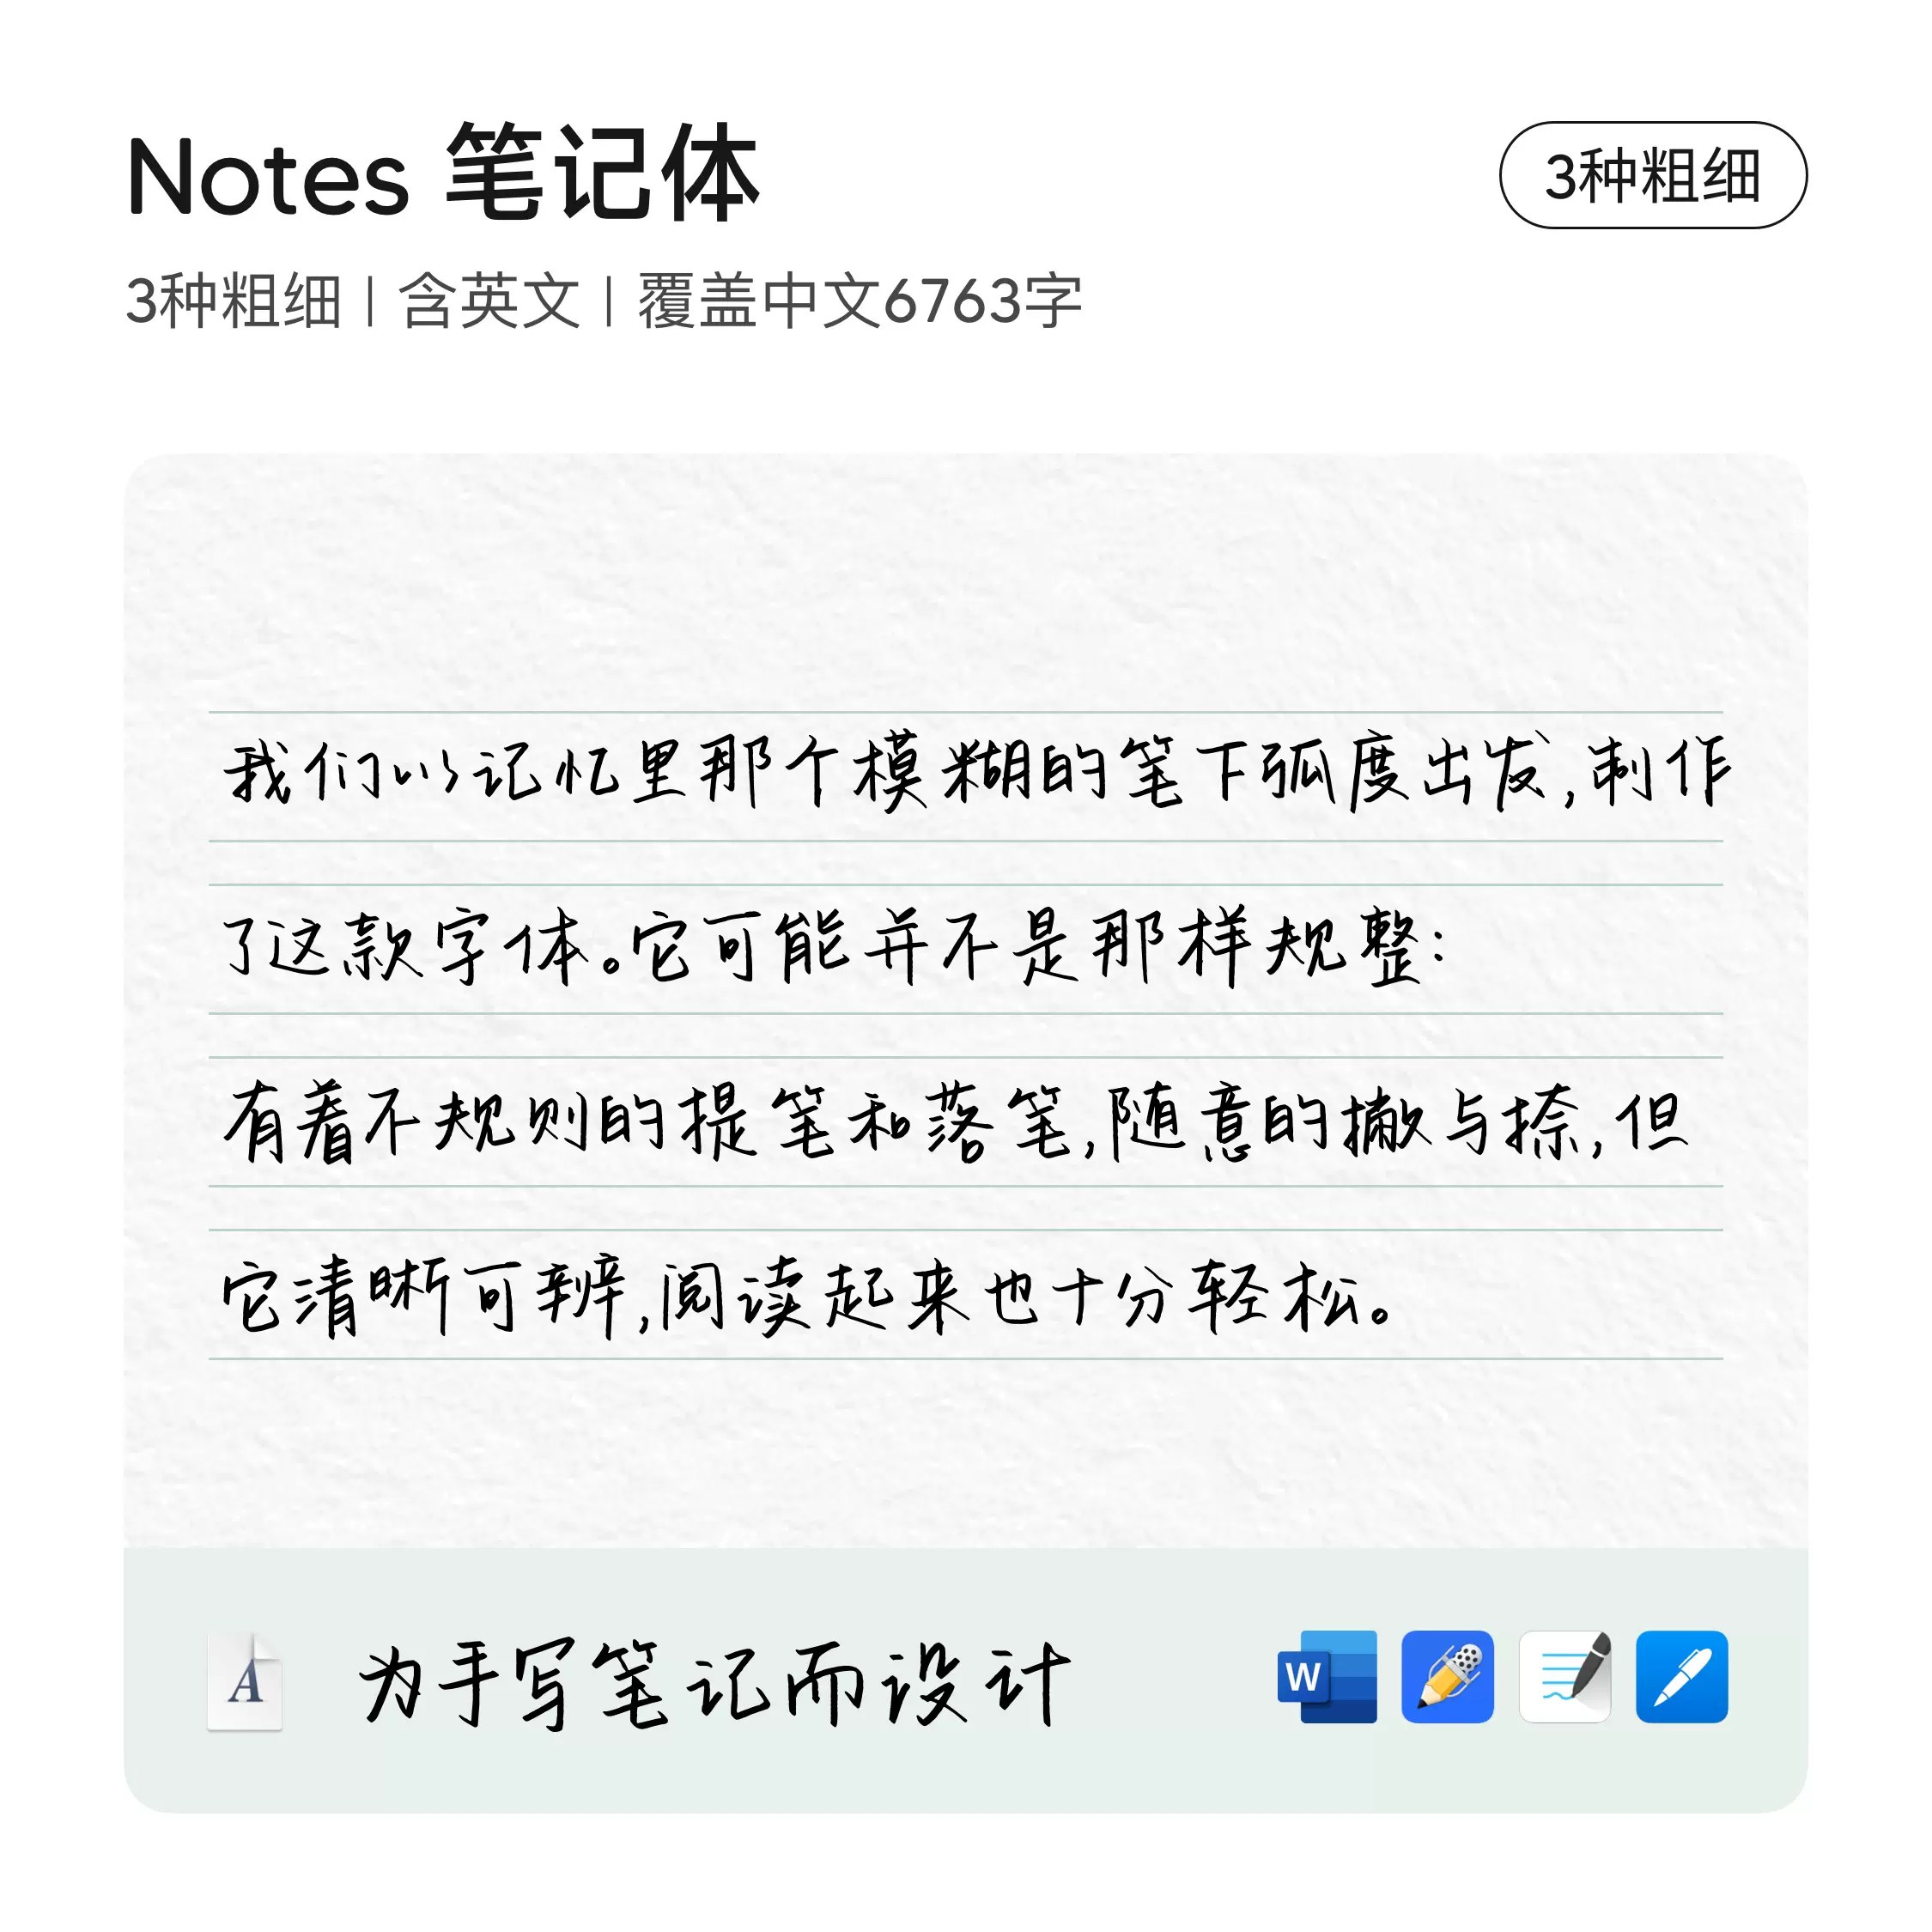 中英文手写字体ipad文本框电子笔记手帐饿了羊eleyangnotes笔记